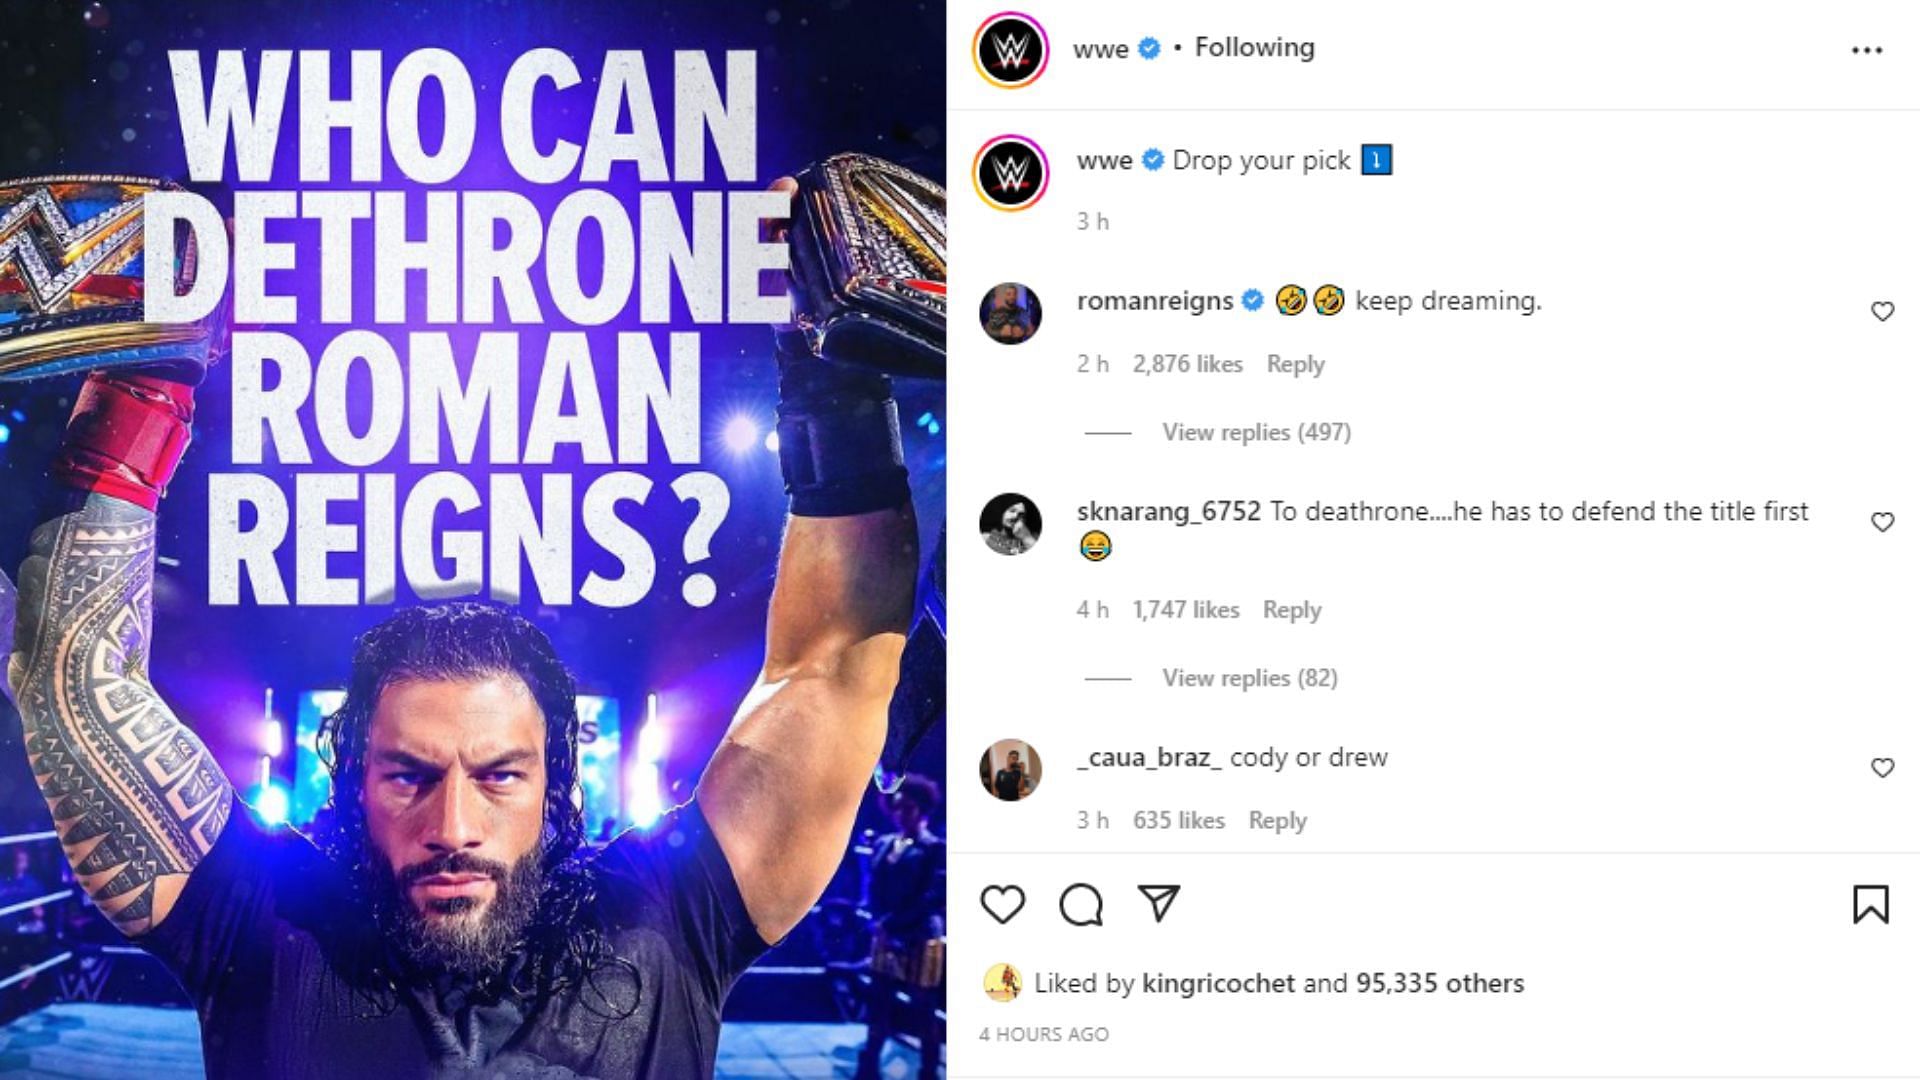 रोमन रेंस ने खुद WWE की पोस्ट पर जवाब दिया